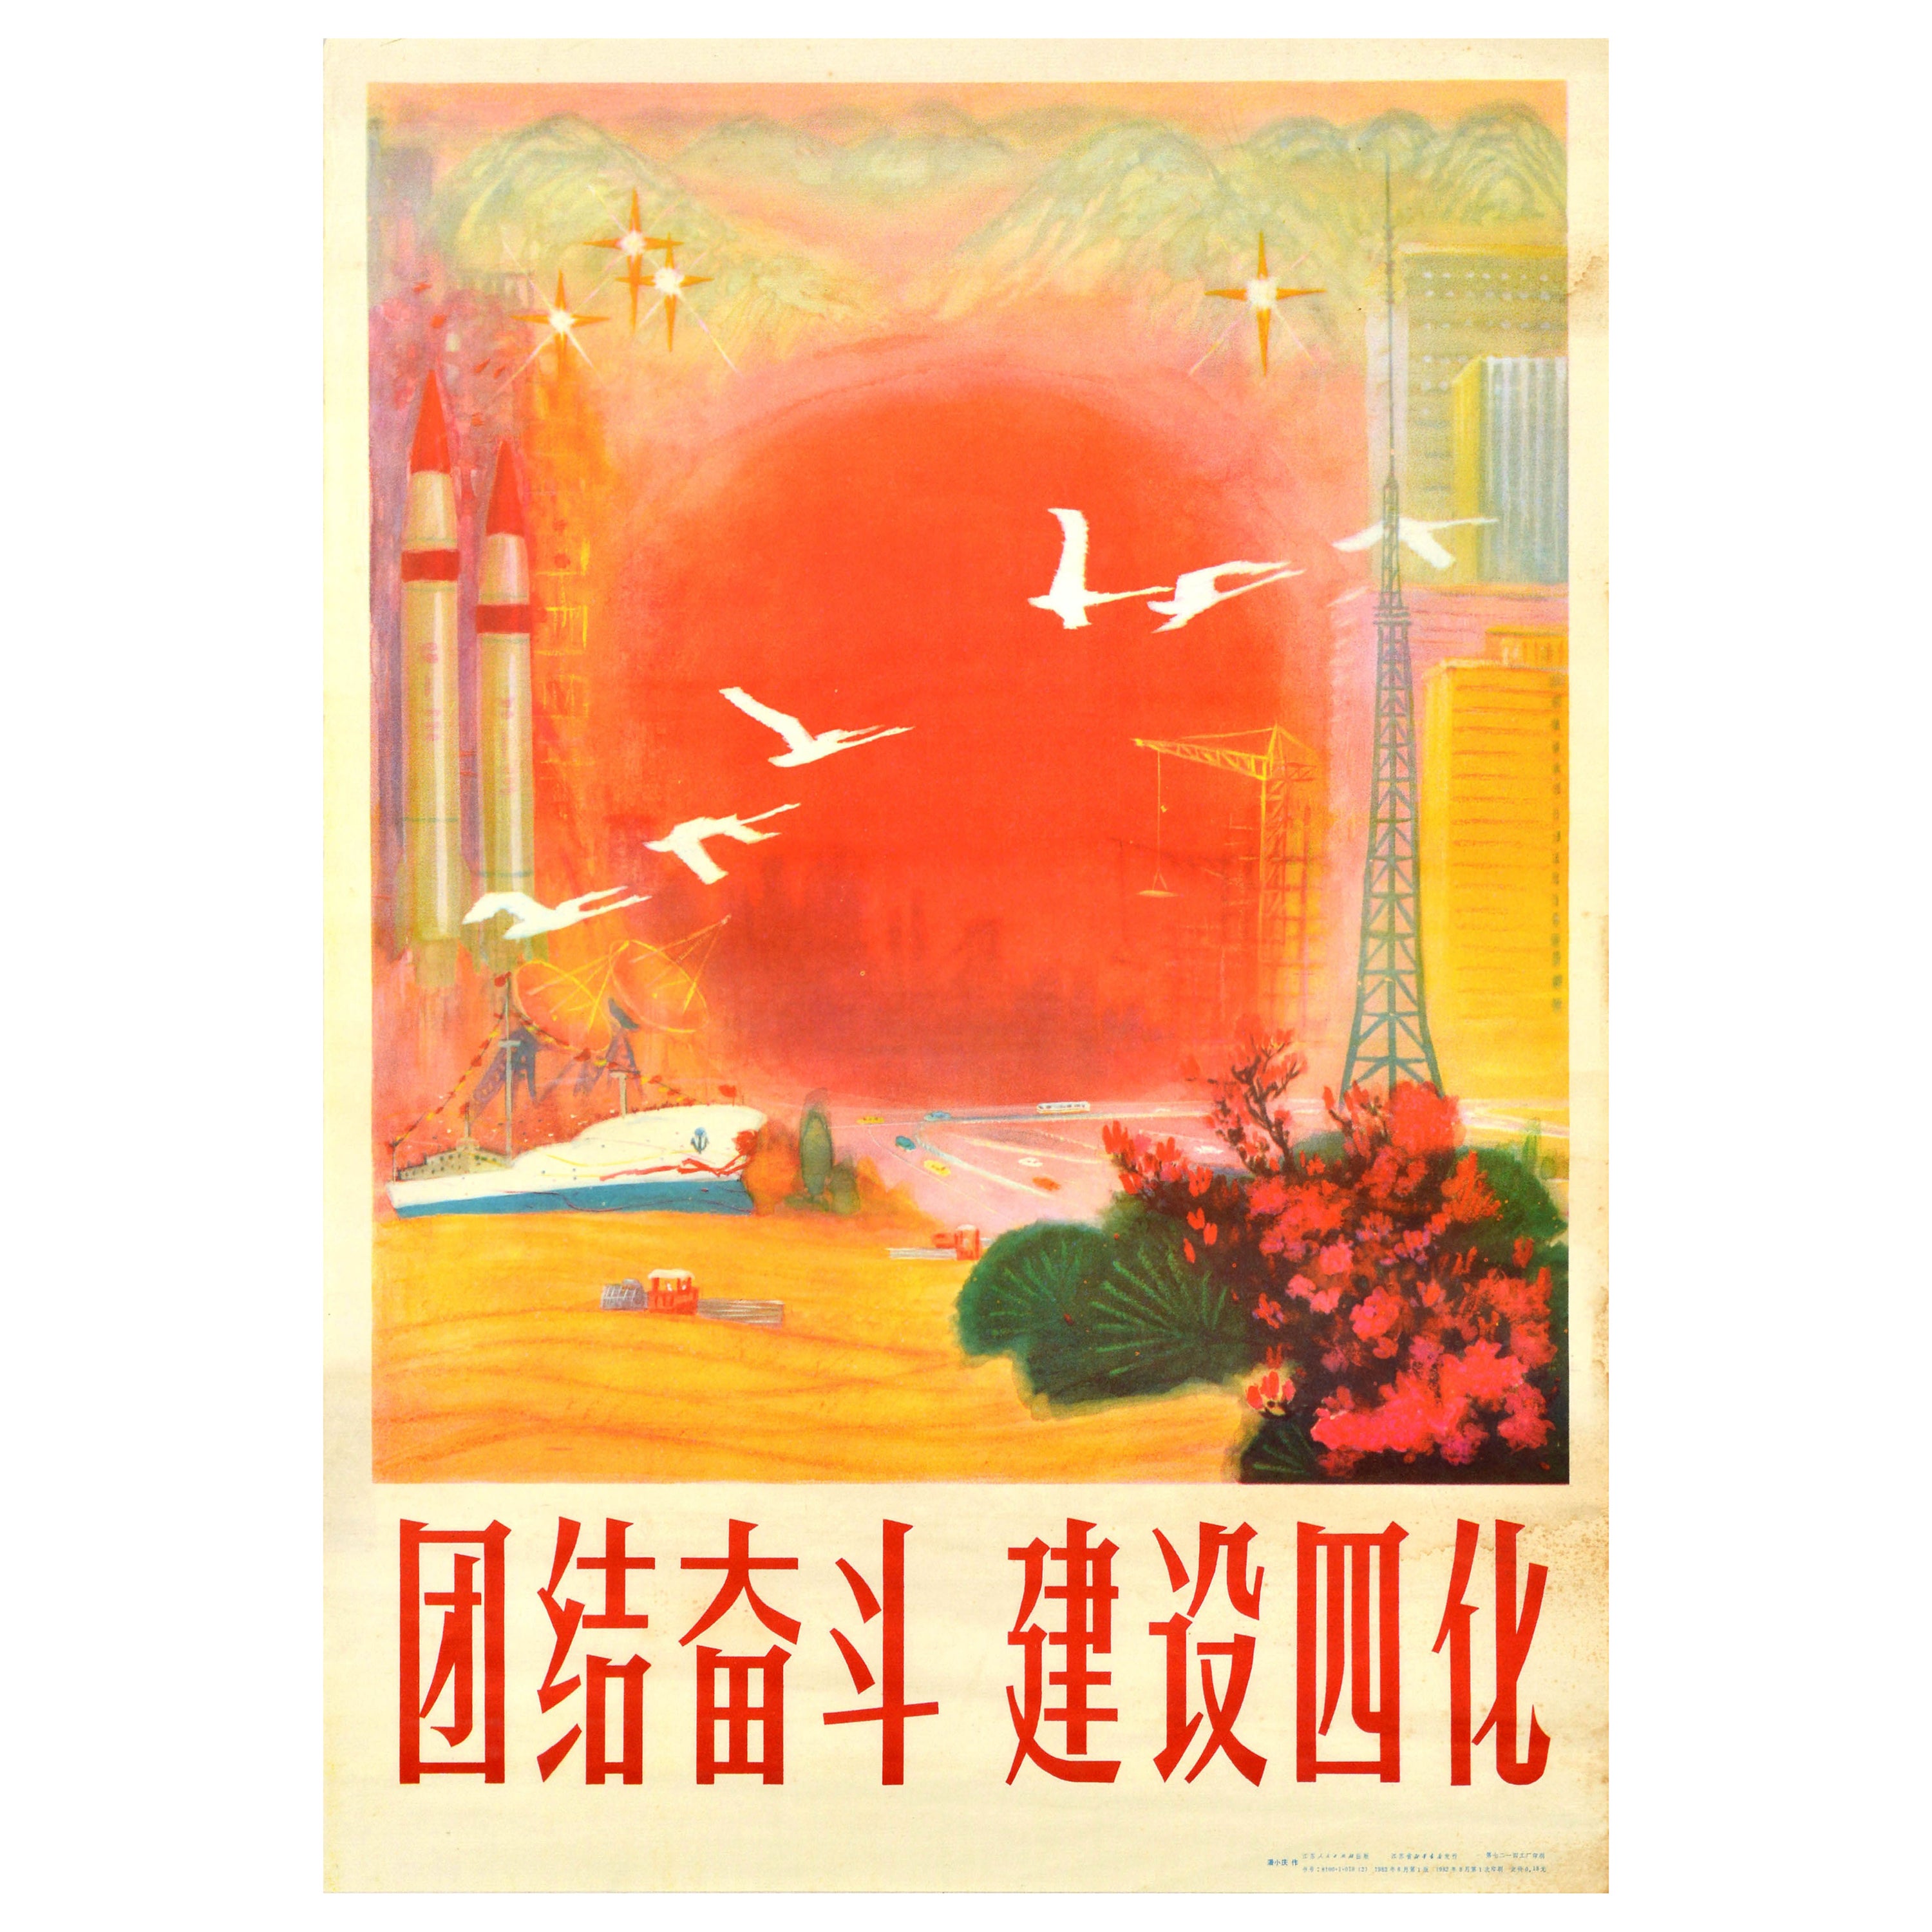 Originales Original-Vintage- Propagandaplakat der chinesischen Kommunistischen Partei, Vier Modernisierungen